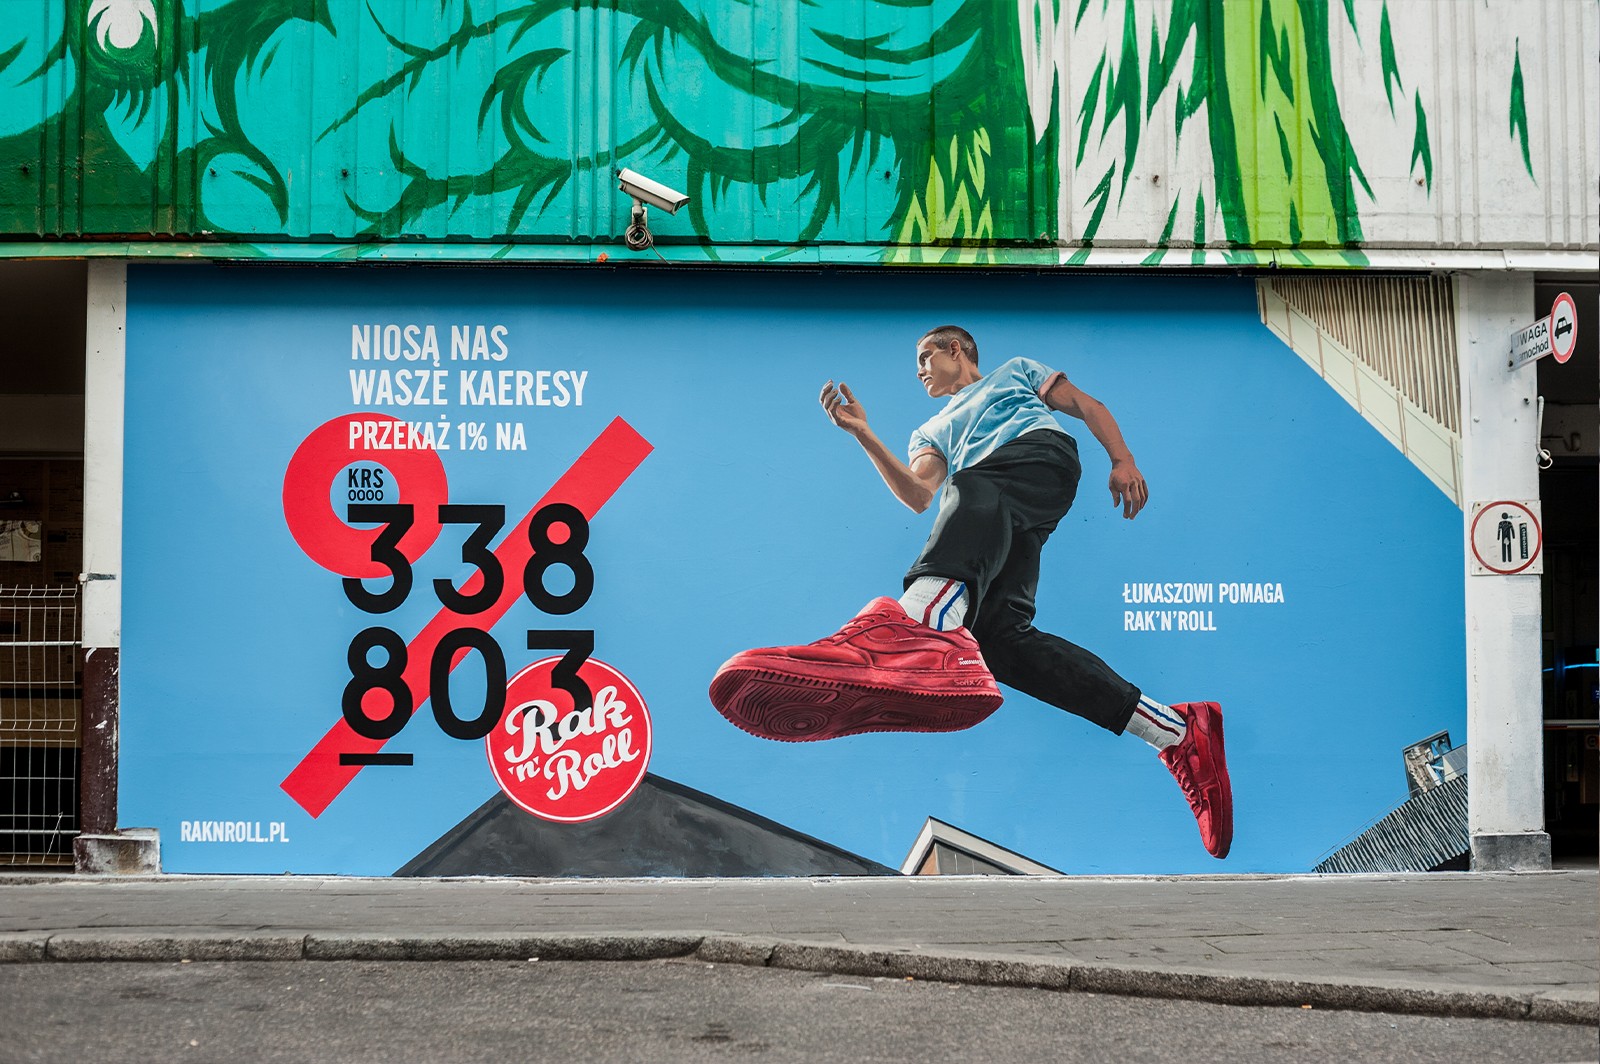 Mural artystyczny dla fundacji Rak'n'Roll w Warszawie | NIOSĄ NAS WASZE KAERESY! | Portfolio